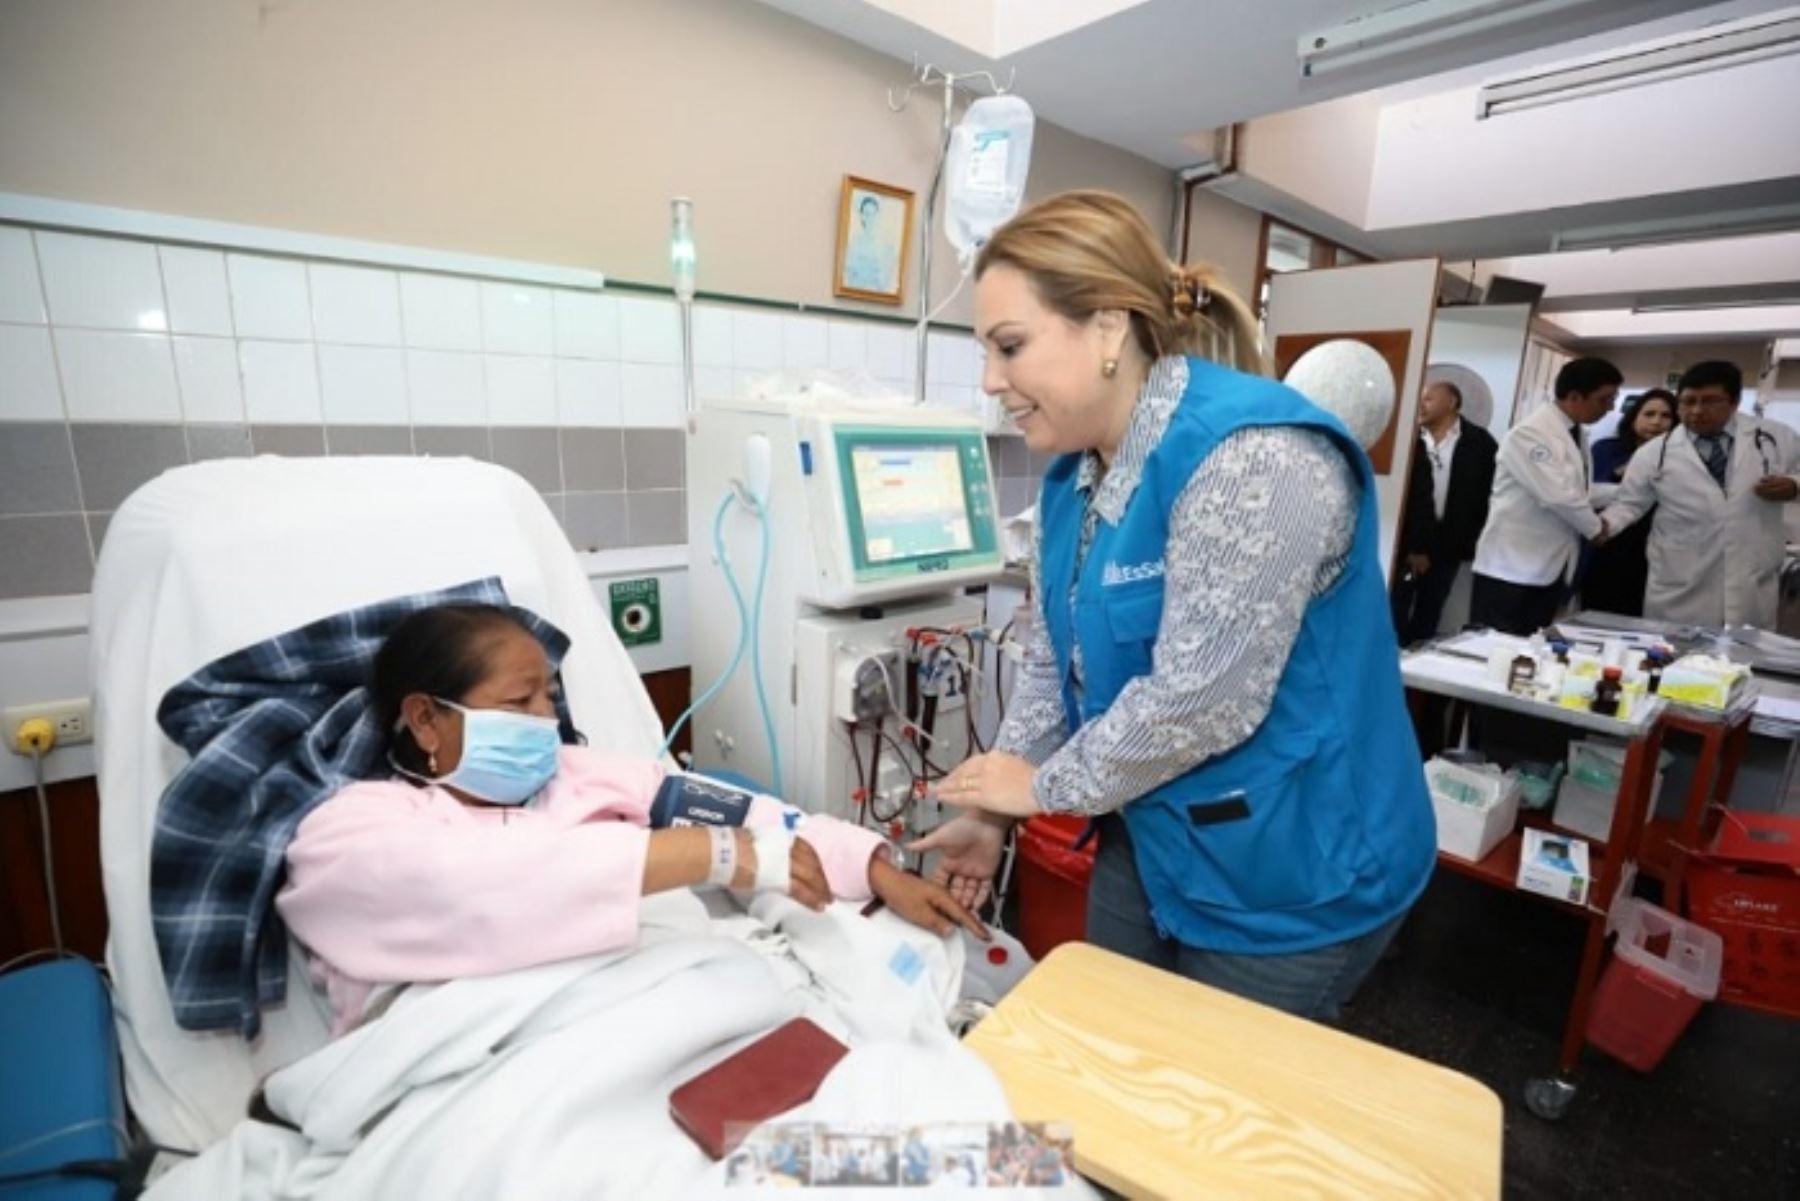 Programa de Atención Prioritaria para pacientes oncológicos también se aplica en hospitales de Lima, Callao, Arequipa, Junín, Lambayeque, La Libertad, Ica y Piura que atiende al 96% de la población oncológica asegurada.